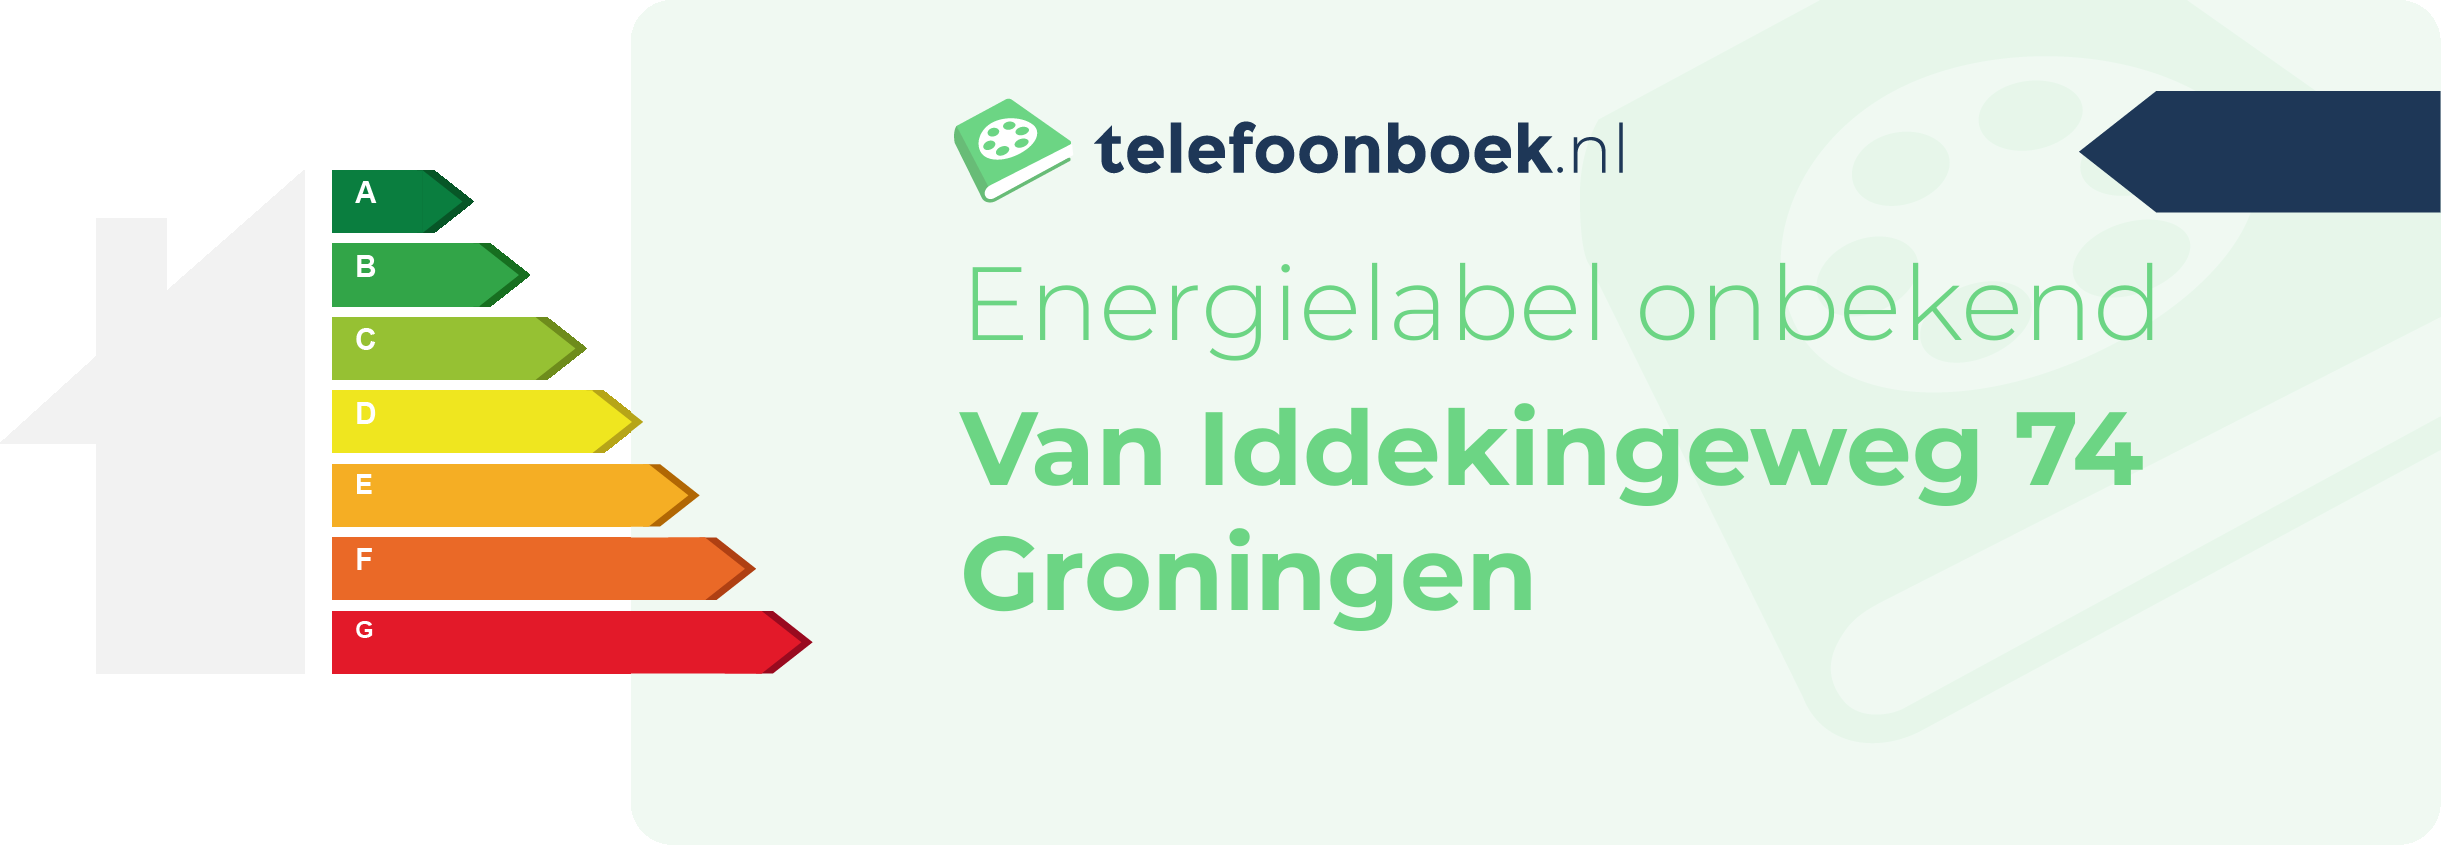 Energielabel Van Iddekingeweg 74 Groningen